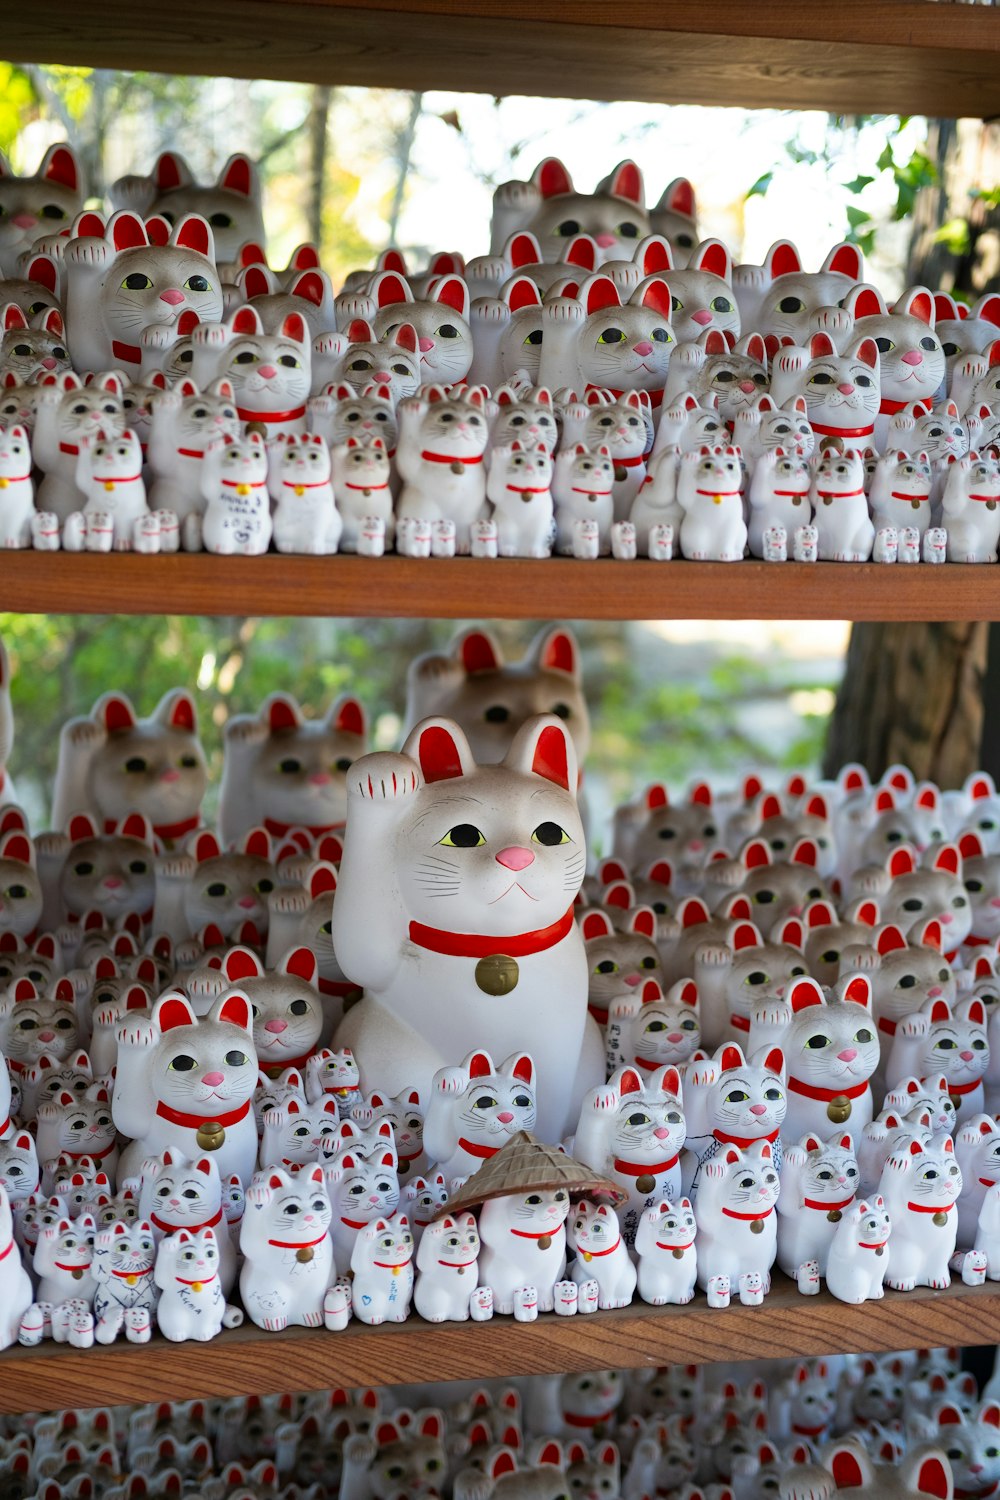 Un estante lleno de muchas figuritas de gatos blancos y rojos